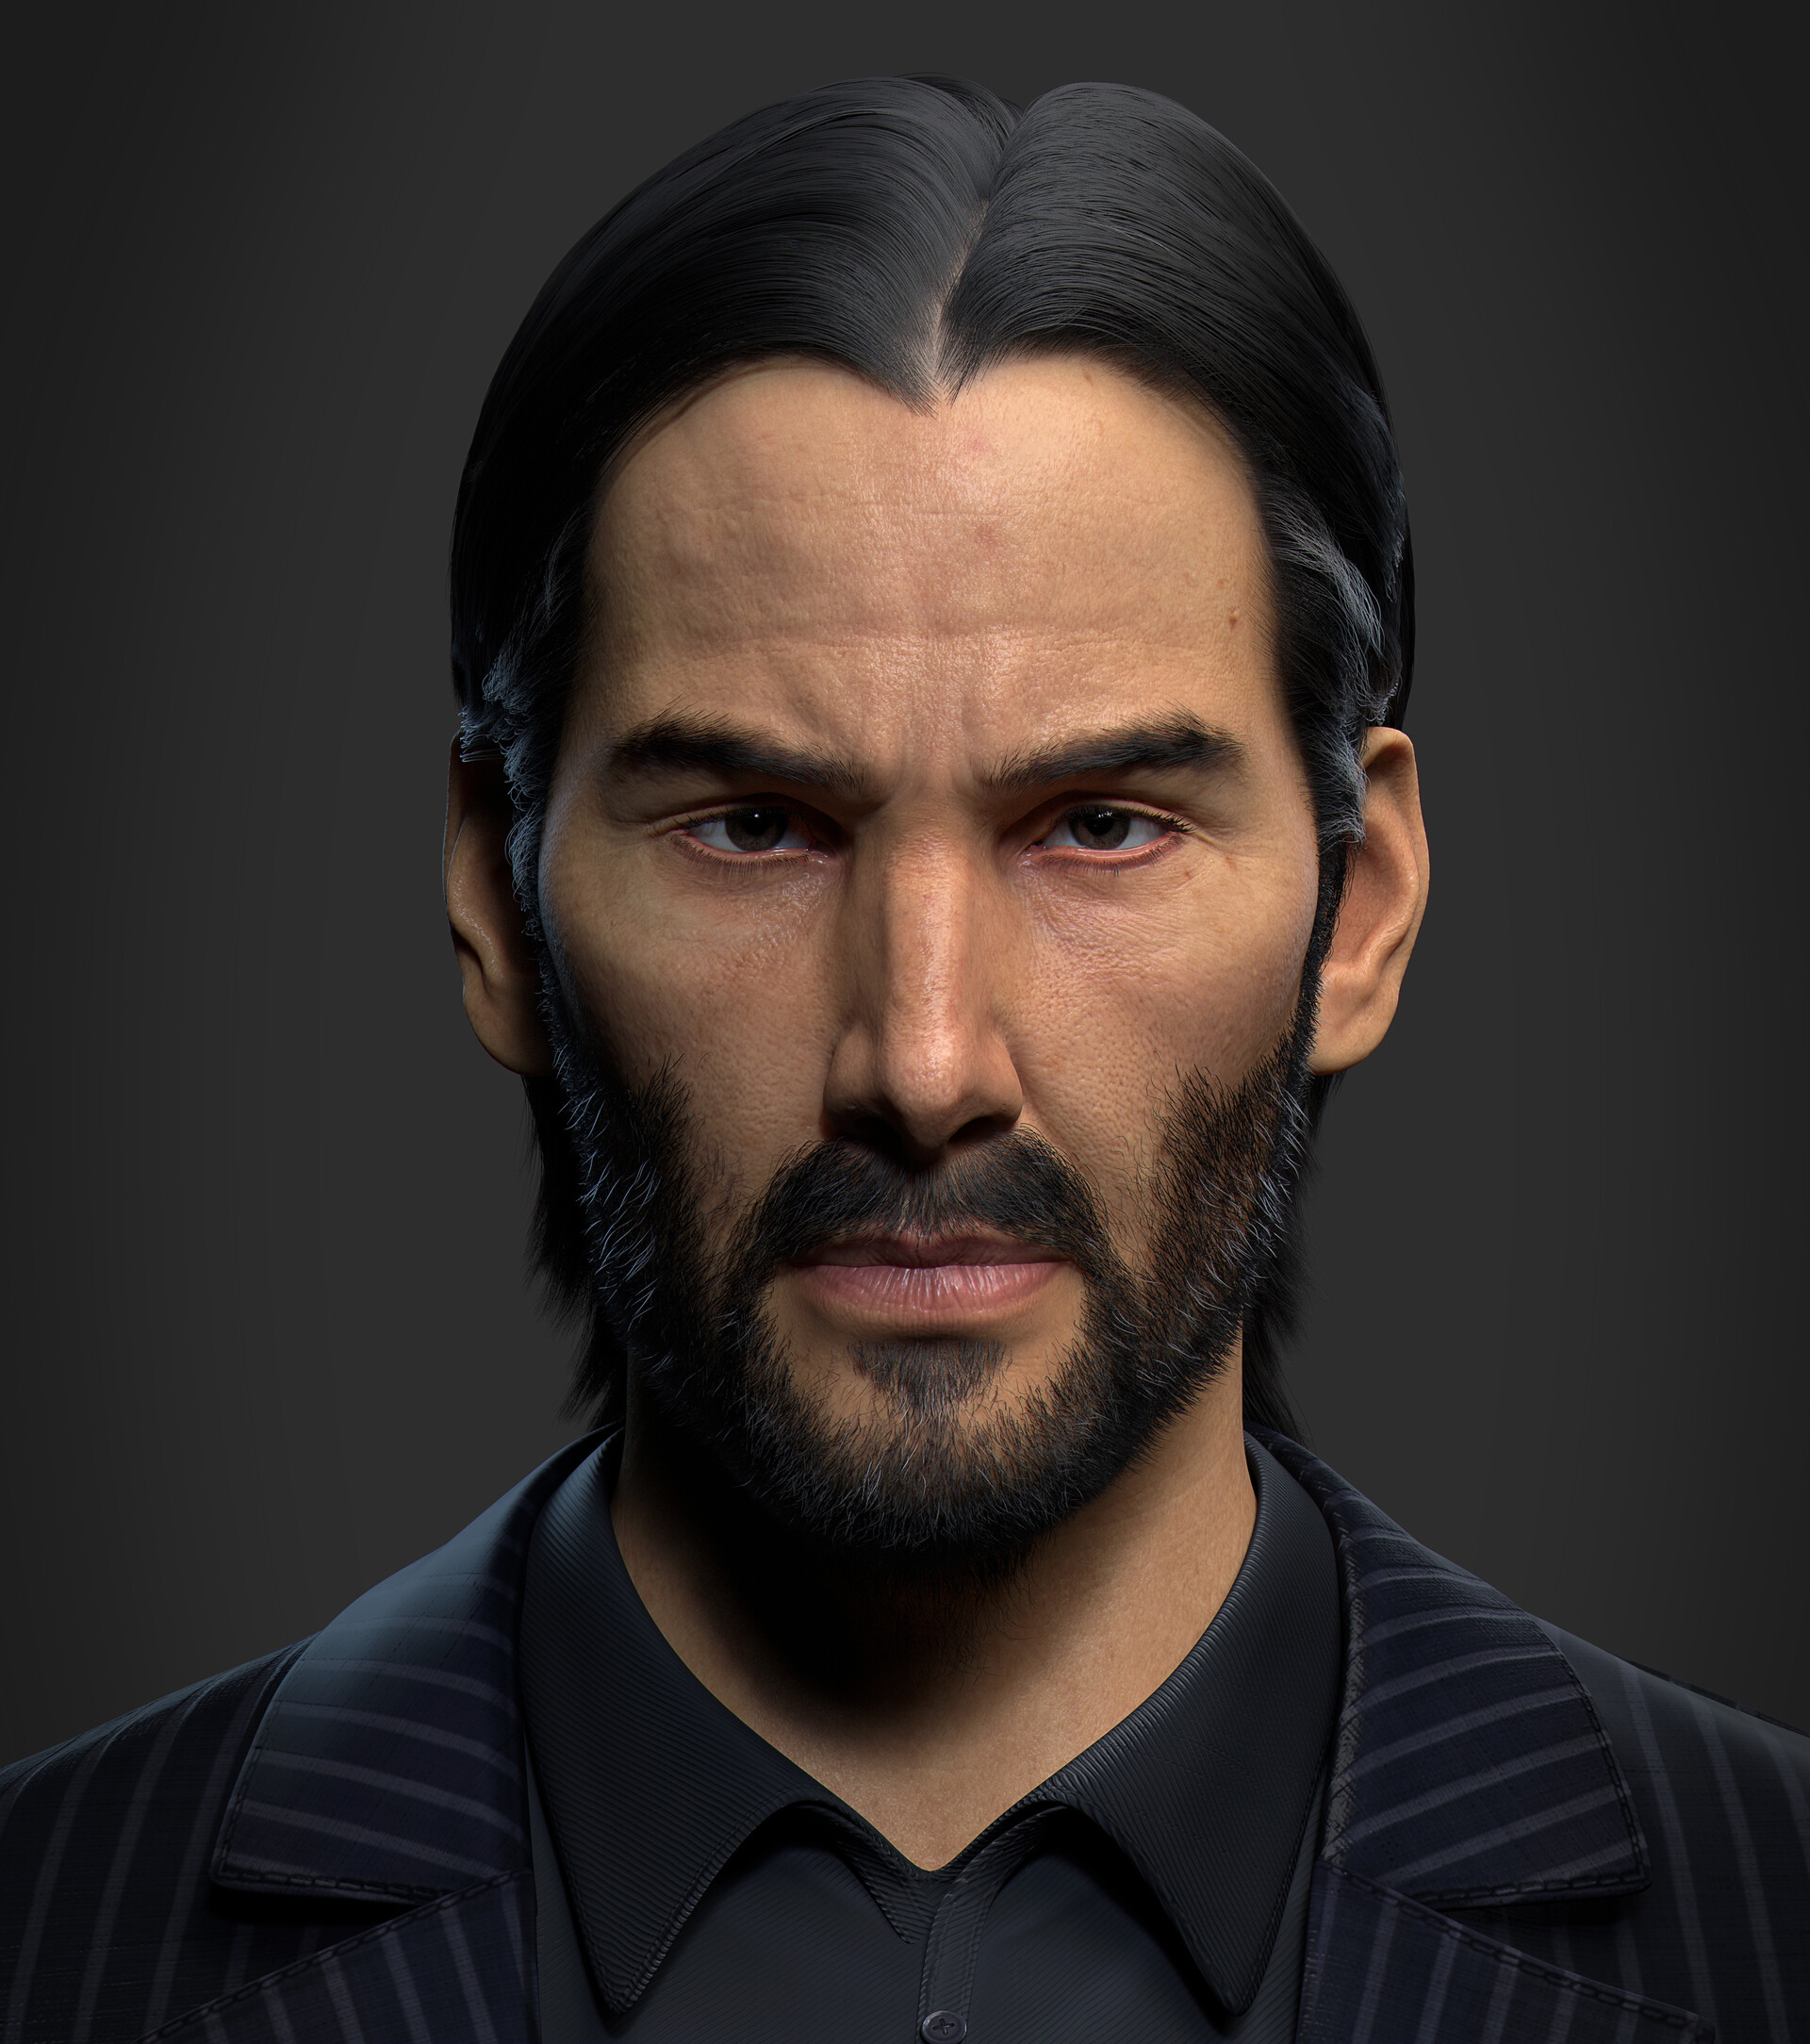 ArtStation - male head 3D Portrait